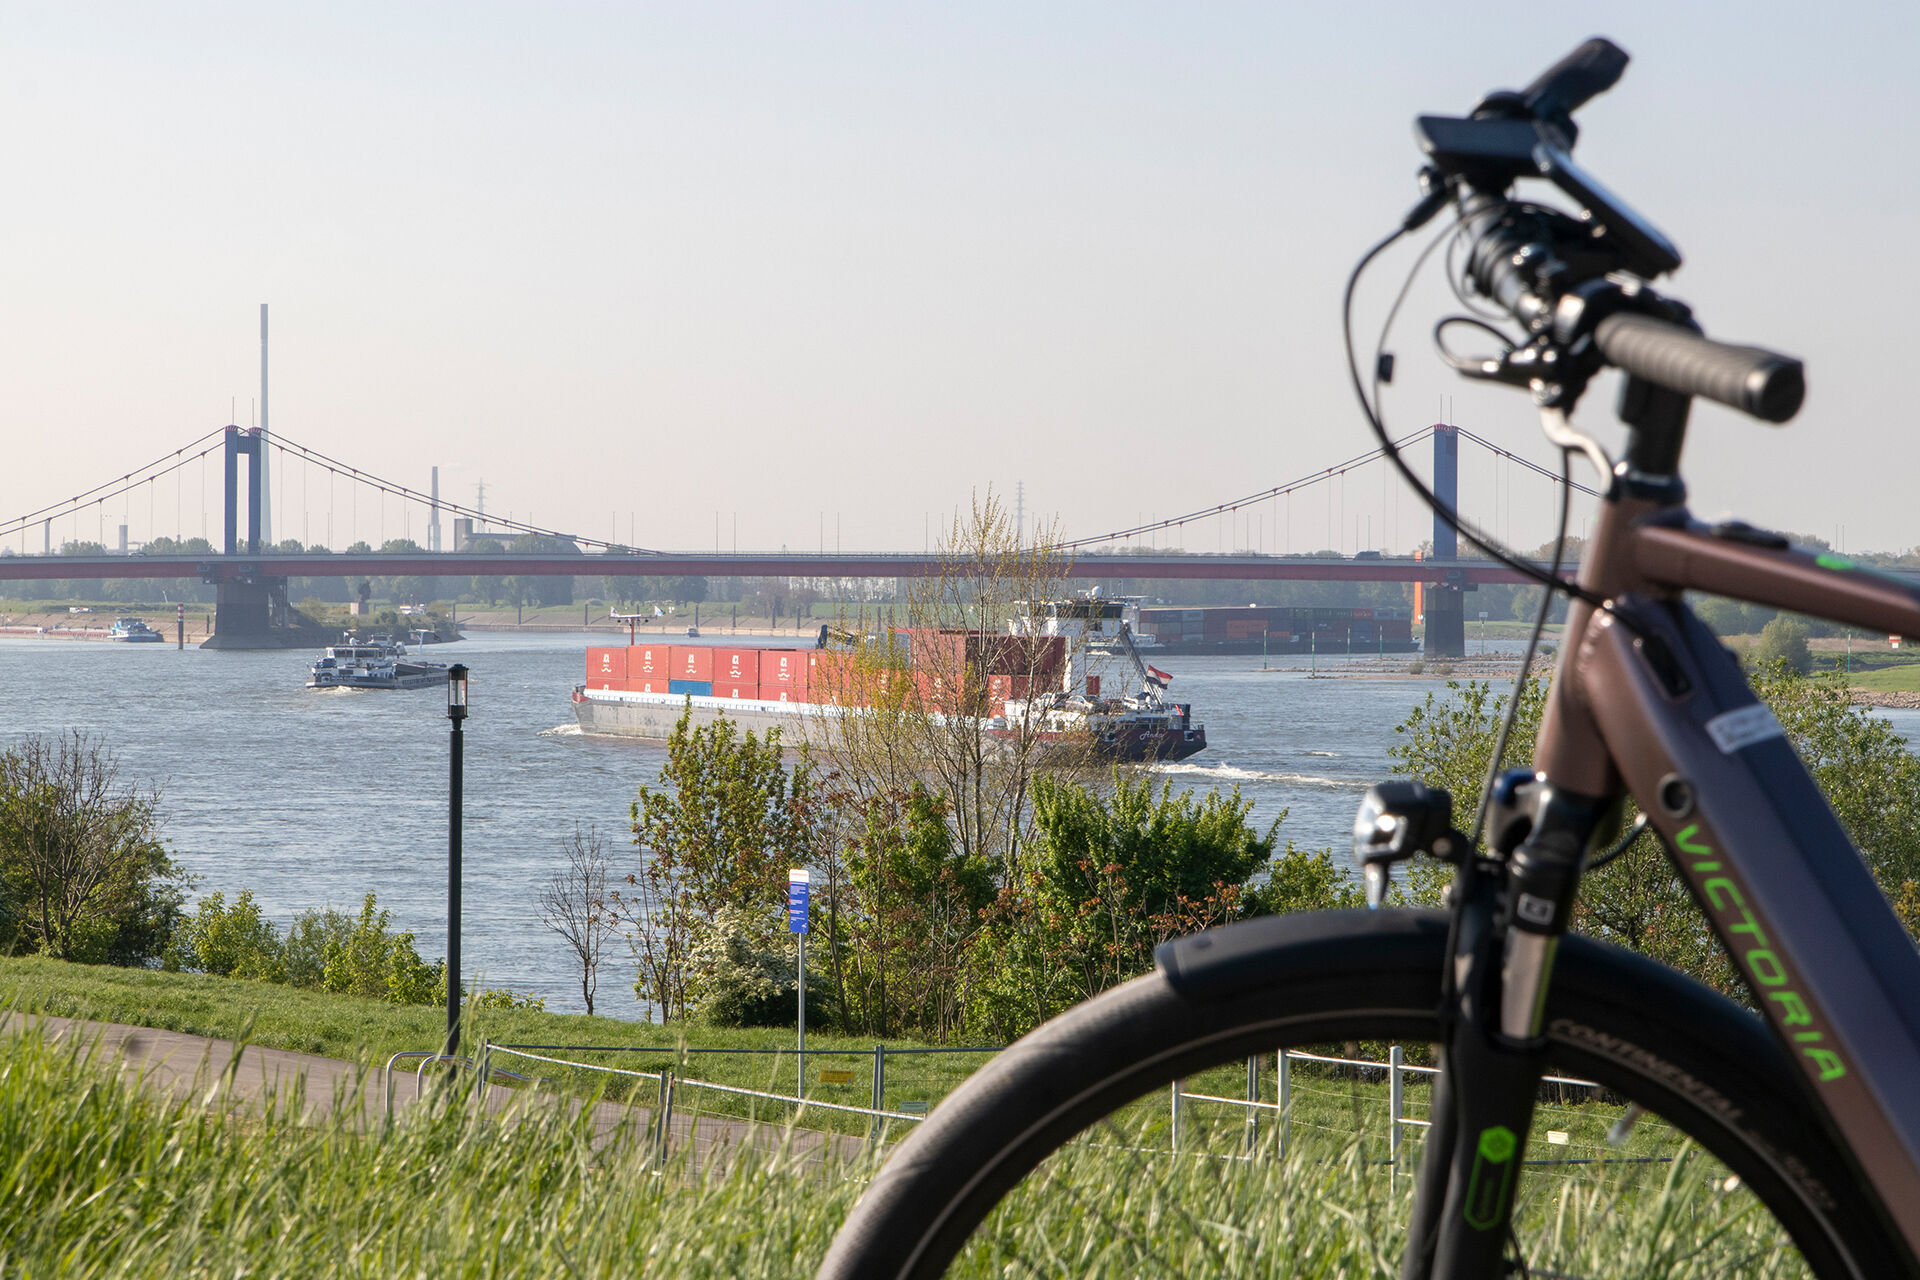  E-Bike steht im Vordergrund, im Hintergrund ist die  Friedrich-Ebert-Brücke Eisenbahnbrücke zu erkennen